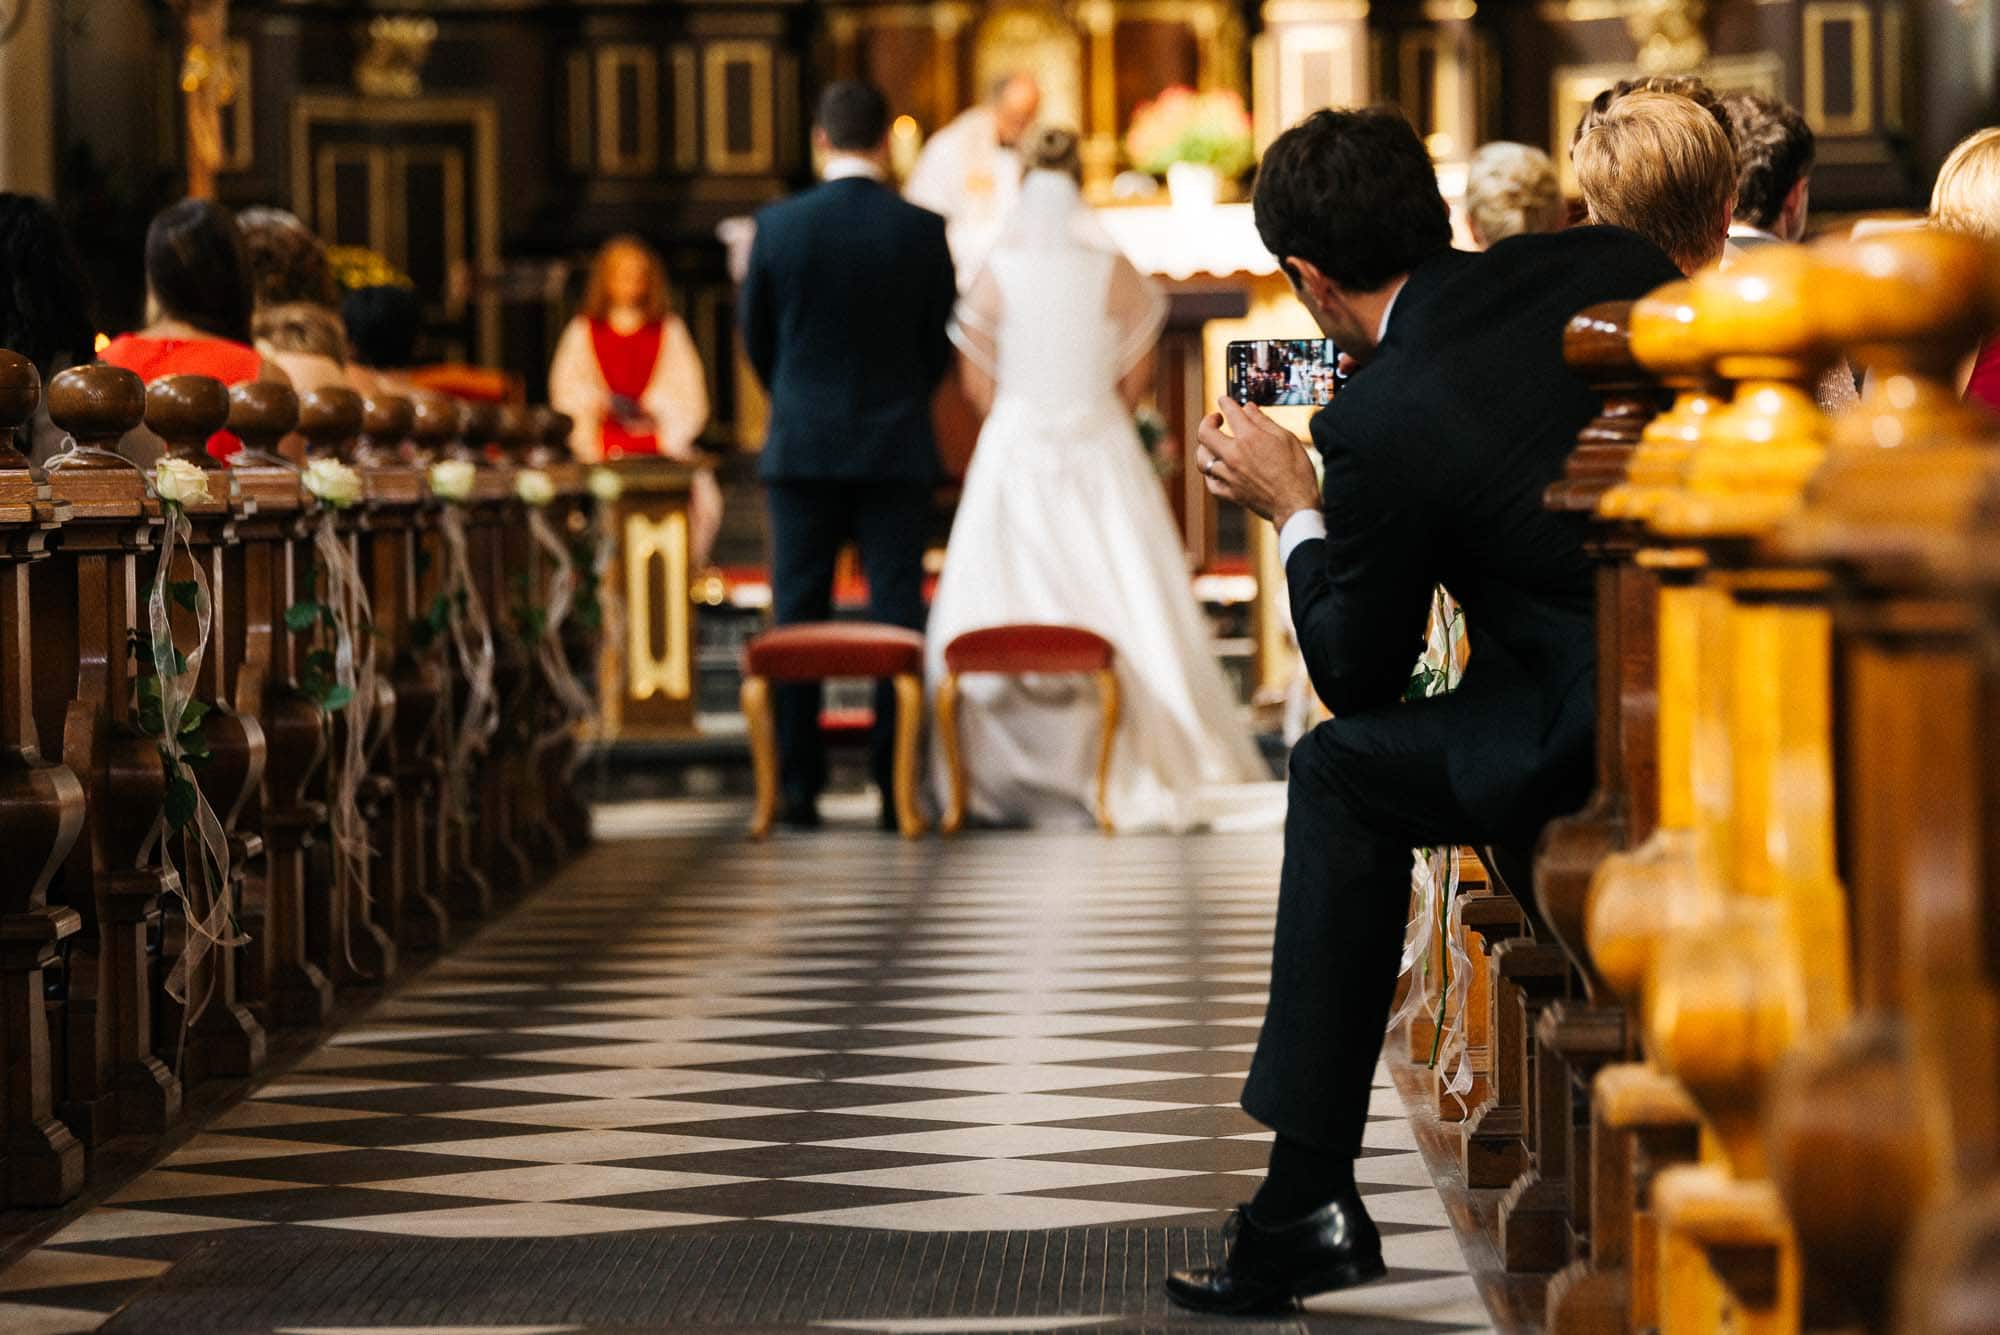 Eine laufende Hochzeitszeremonie mit einem Gast, der am Altar Hochzeitsfotos der Braut und des Bräutigams macht.